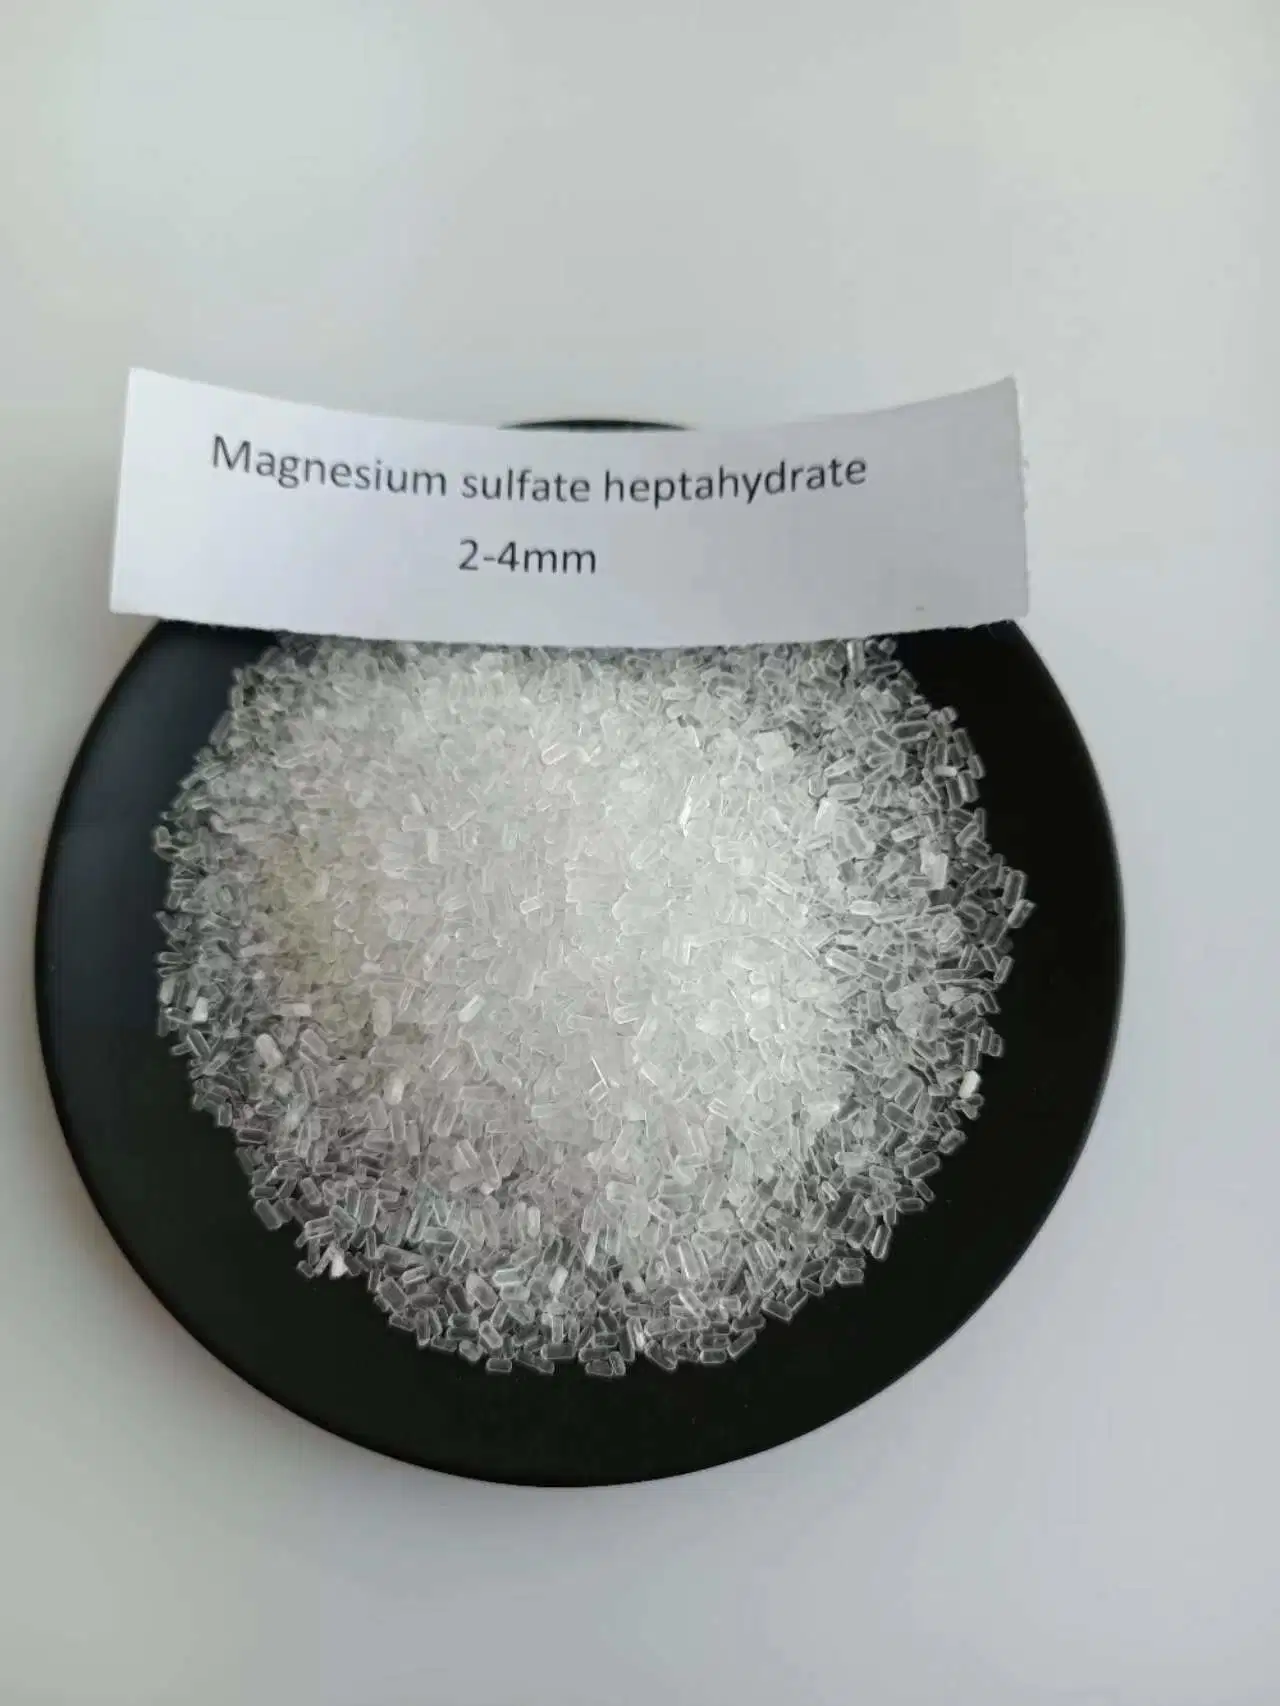 سبتاهيدرات المغنيسيوم سعر السلط النقي من سبتاهيدرات السلط بالجملة Mgso4.7H2O